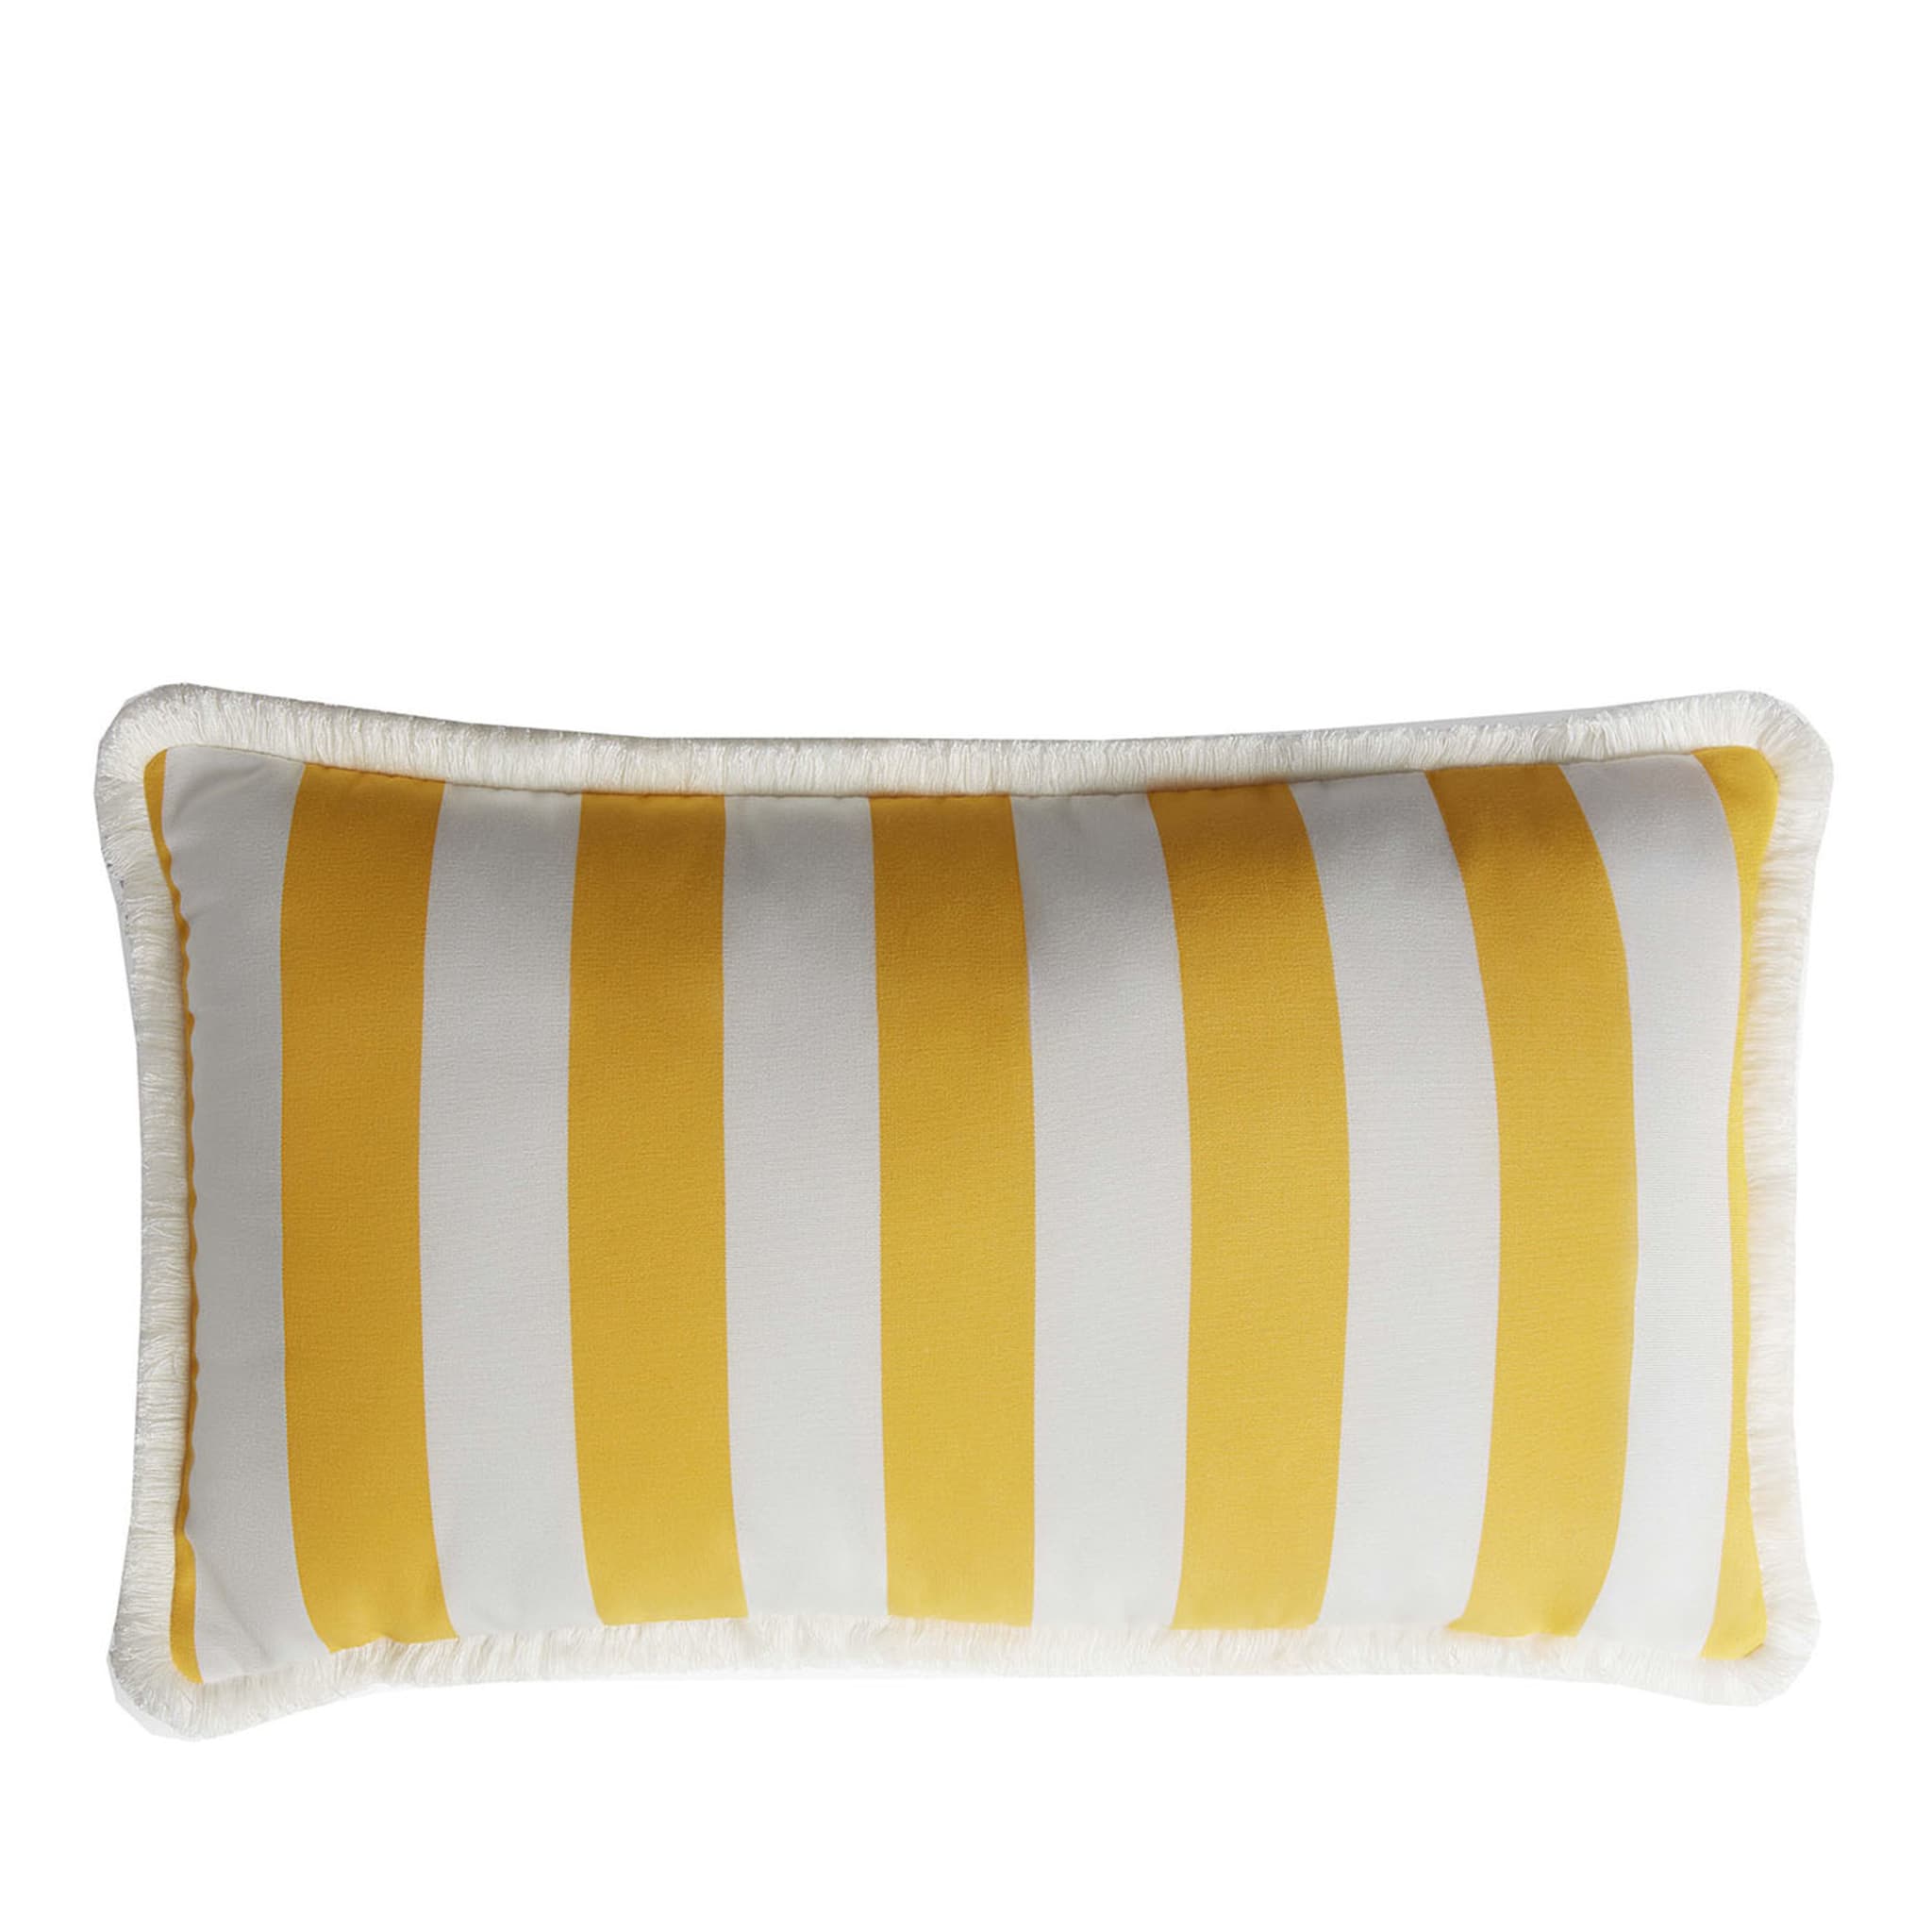 Cuscino da esterno Happy bianco e giallo con frange  - Vista principale